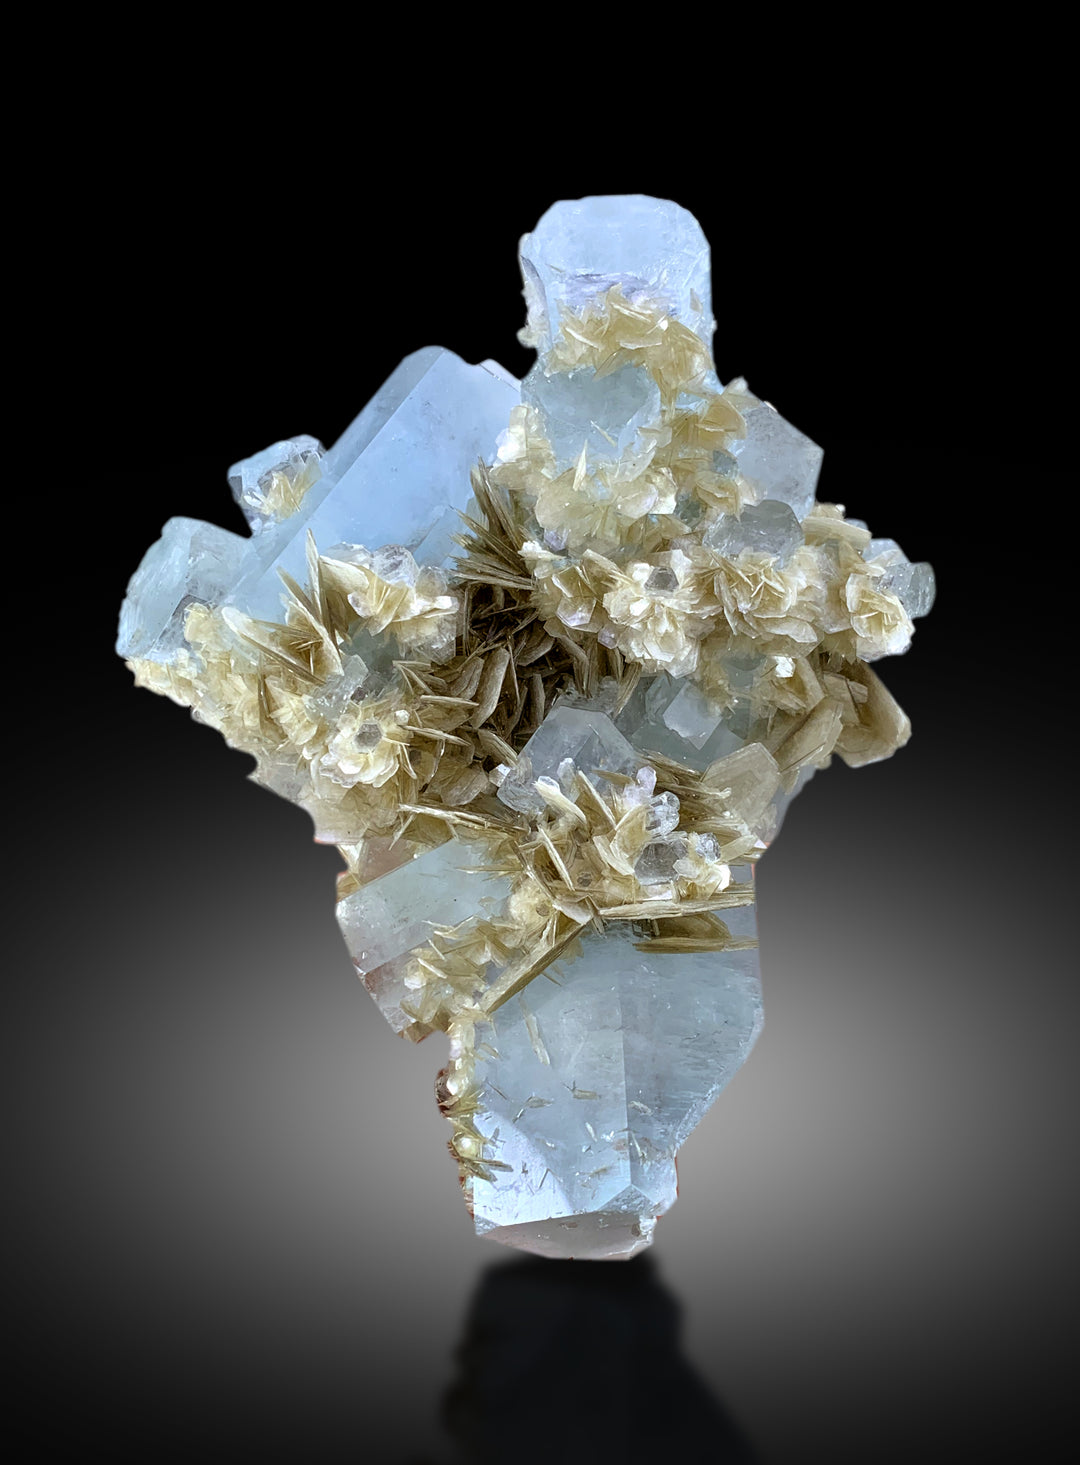 Aquamarine Specimen, Aquamarine Crystals on Muscovite Mica, Natural Aquamarine, Aquamarine for sale, Mineral Specimen, Raw Gemstone, 700g